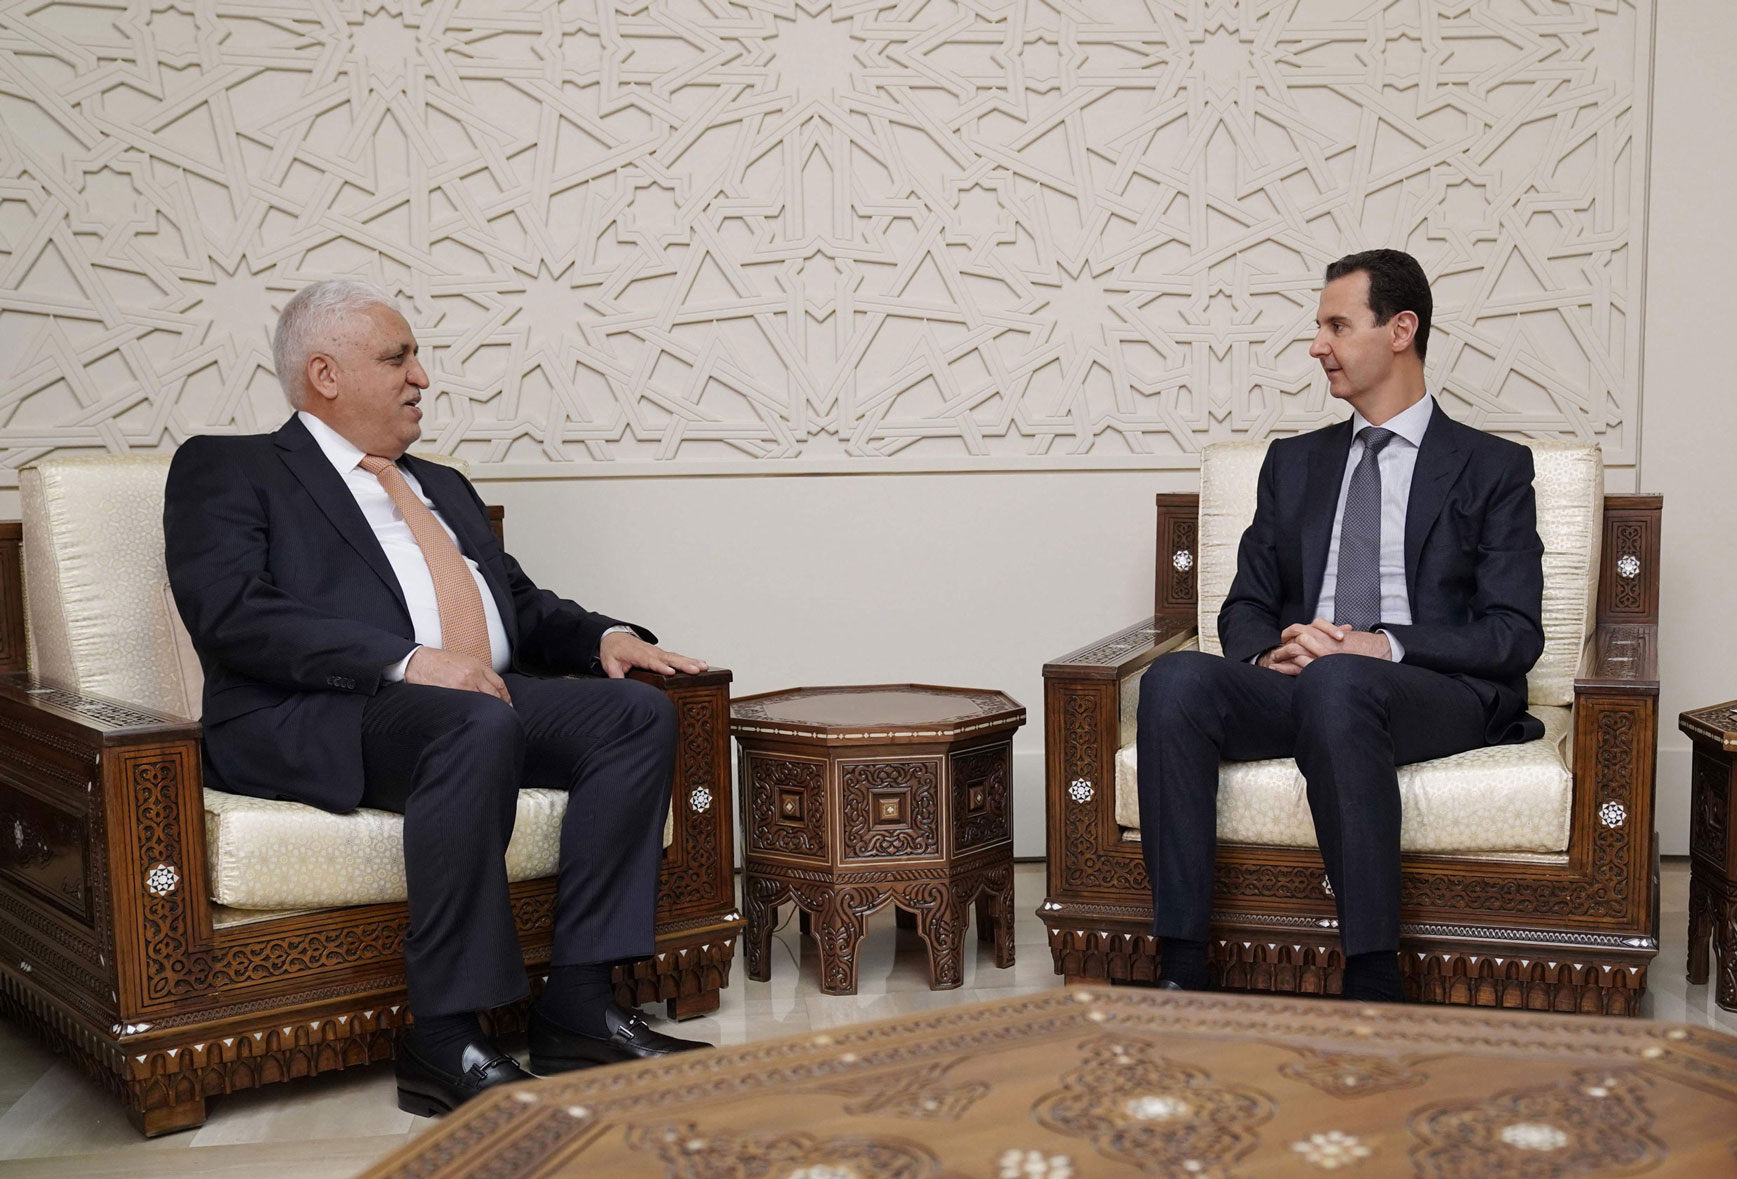 فالح الفياض رئيس هيئة الحشد الشعبي التقى الرئيس السوري بشار الأسد في دمشق